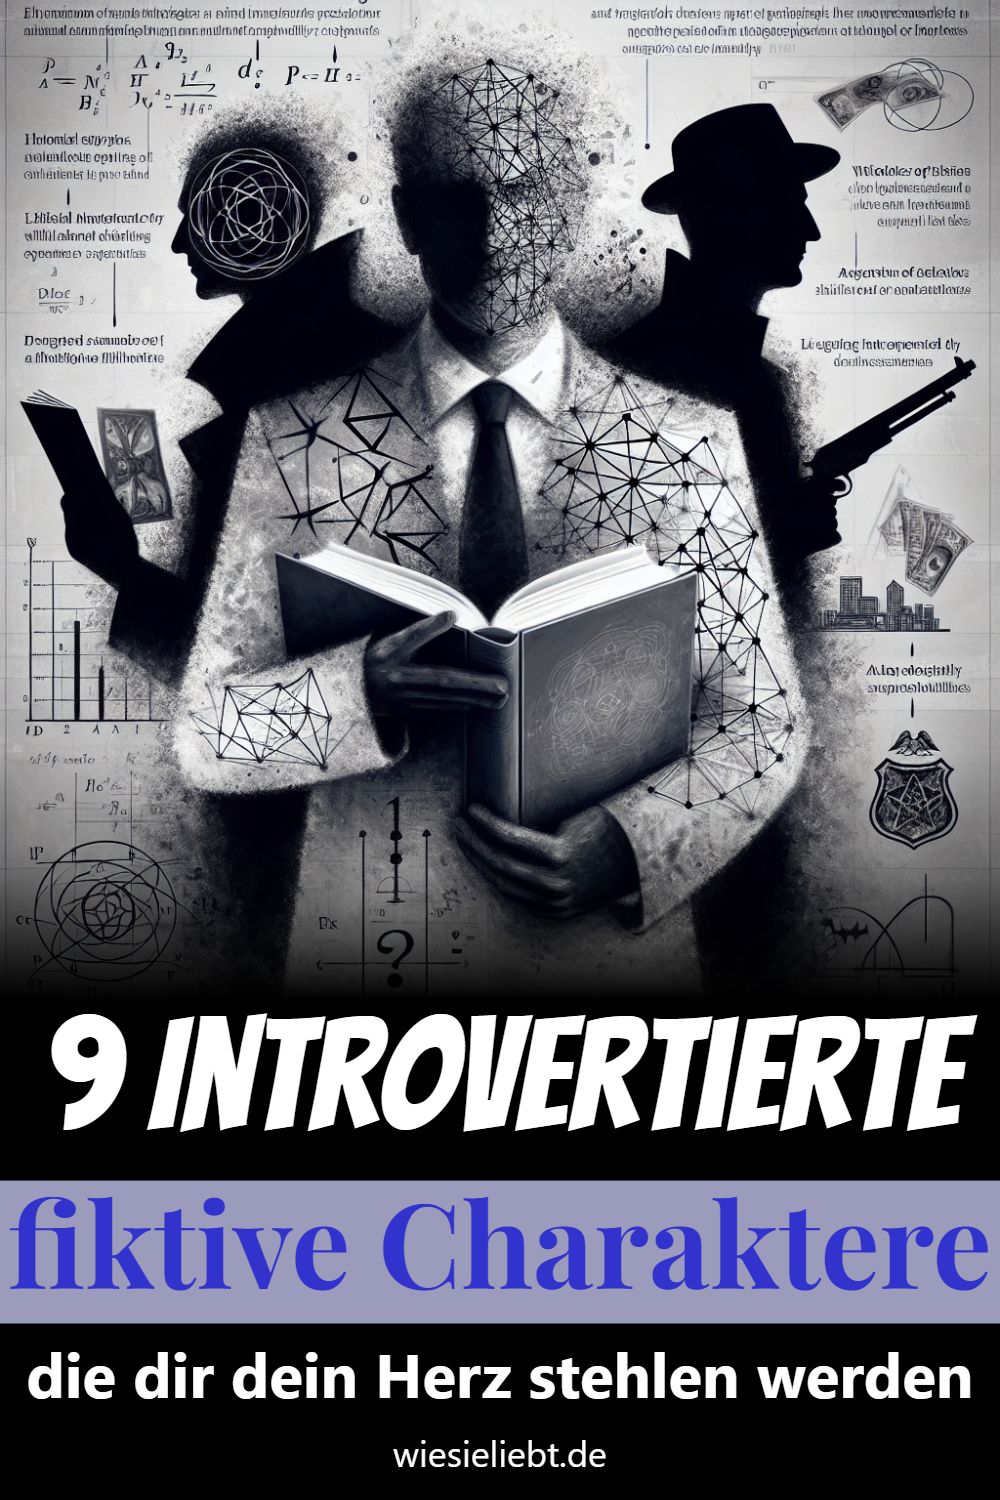 9 Introvertierte fiktive Charaktere die dir dein Herz stehlen werden